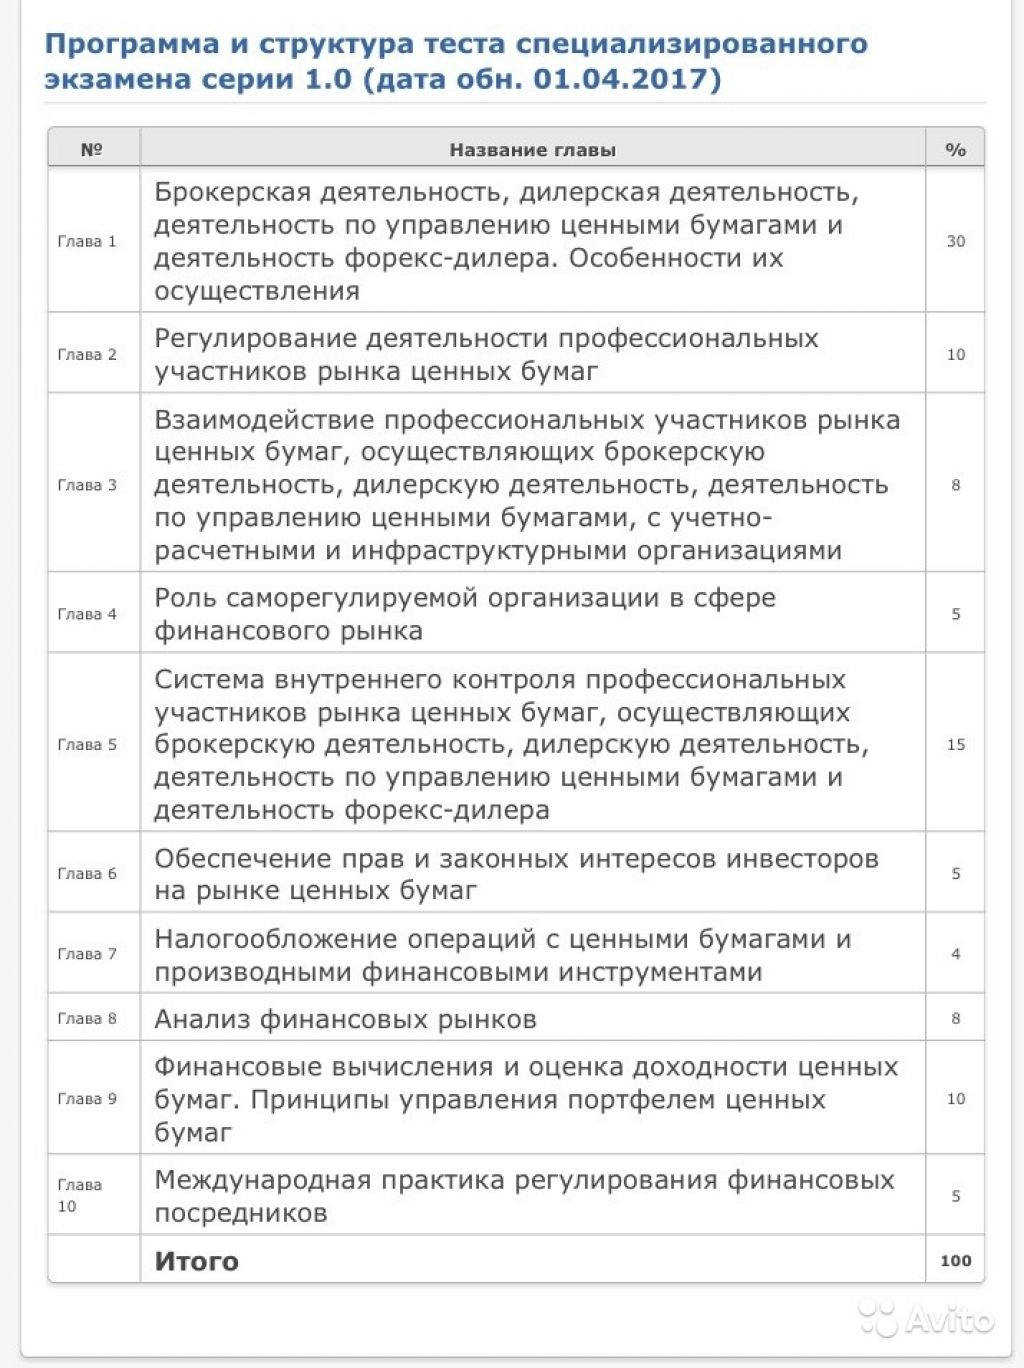 Тренажёр для экзамена фсфр 1.0 с решением задач в Москве. Фото 1